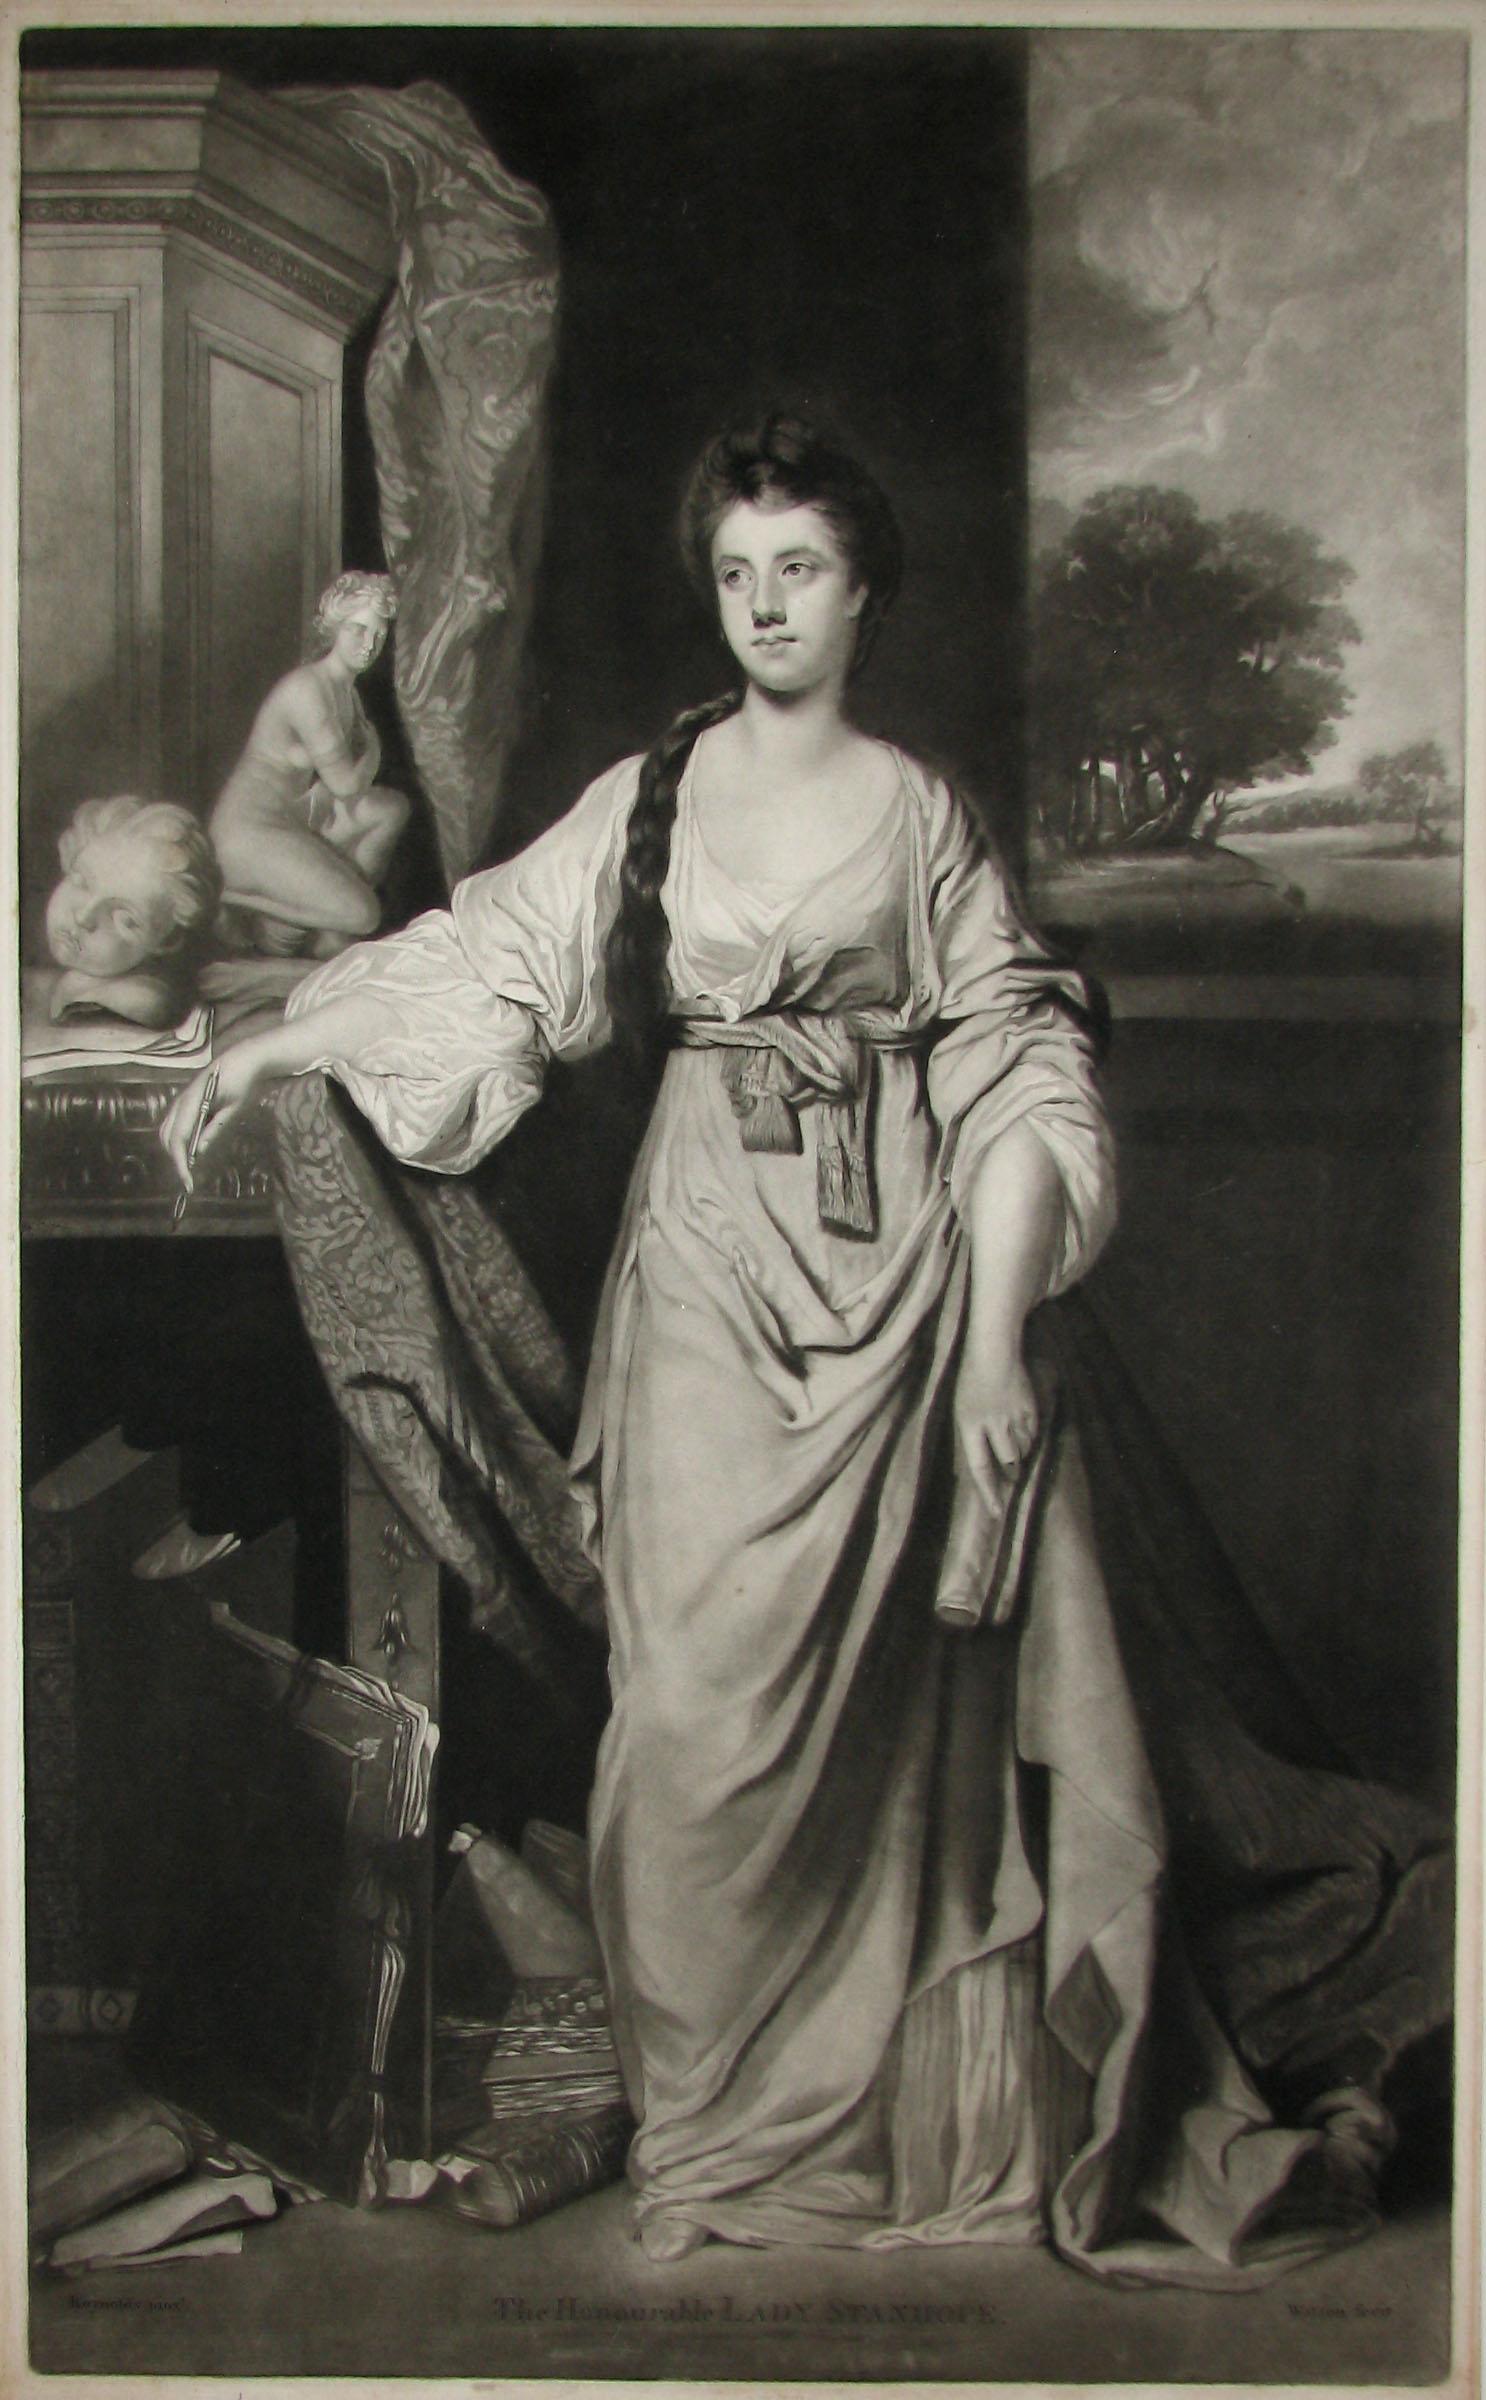 Lady Stanhope, estampe de portrait en mezzo-tinte anglaise d'après Sir Joshua Reynolds, vers 1780